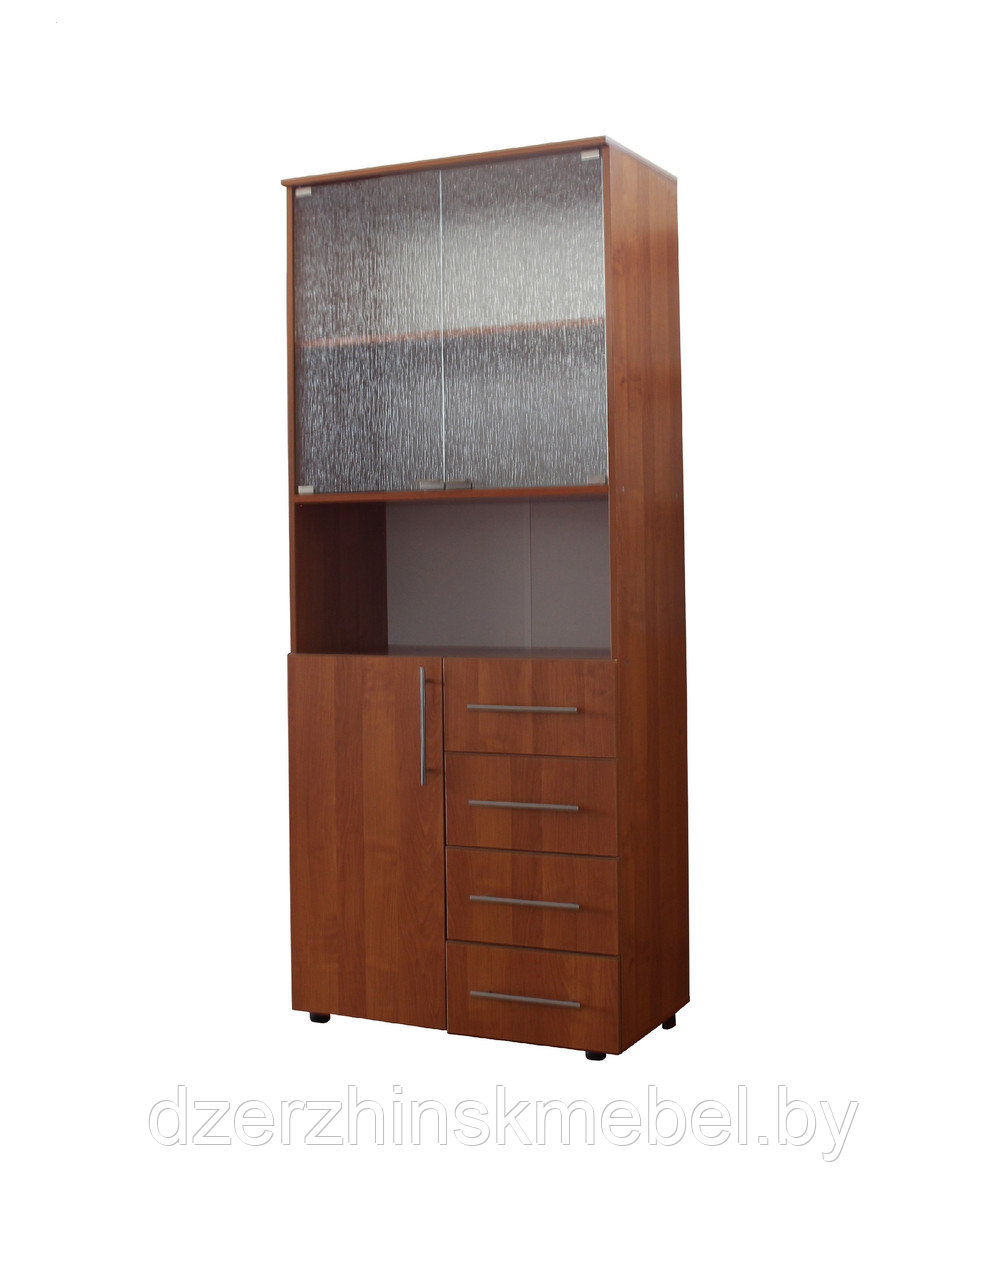 Шкаф для офиса КС-005-5Д1. Производитель ООО КомпасКММ. РБ